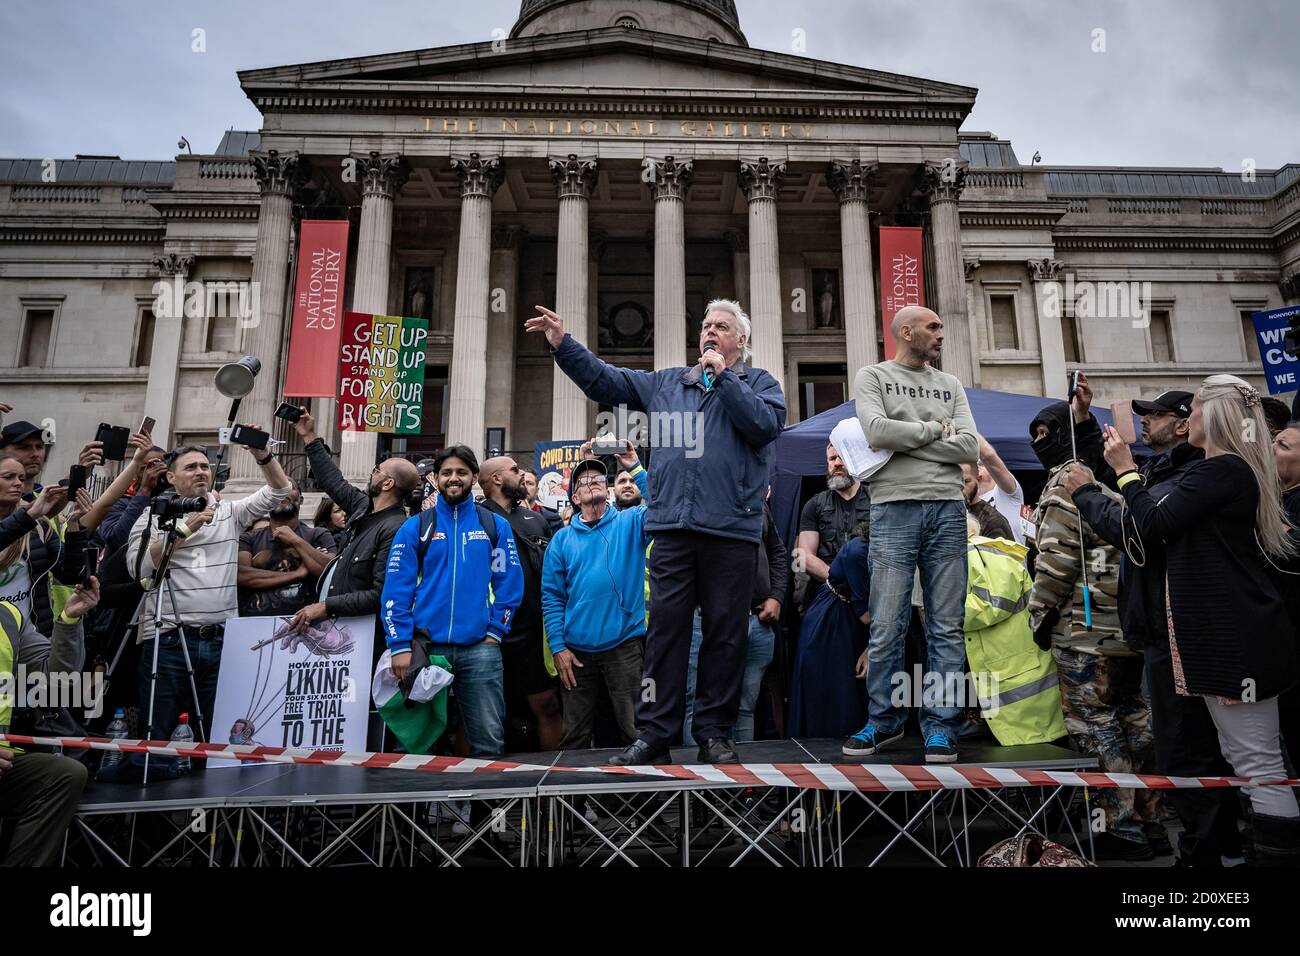 Tausende maskenlose Demonstranten ignorieren die soziale Distanzierung für ‘Wir stimmen nicht zu’ Anti-Lockdown-Proteste und Kundgebungen am Trafalgar Square, London, Großbritannien. Stockfoto